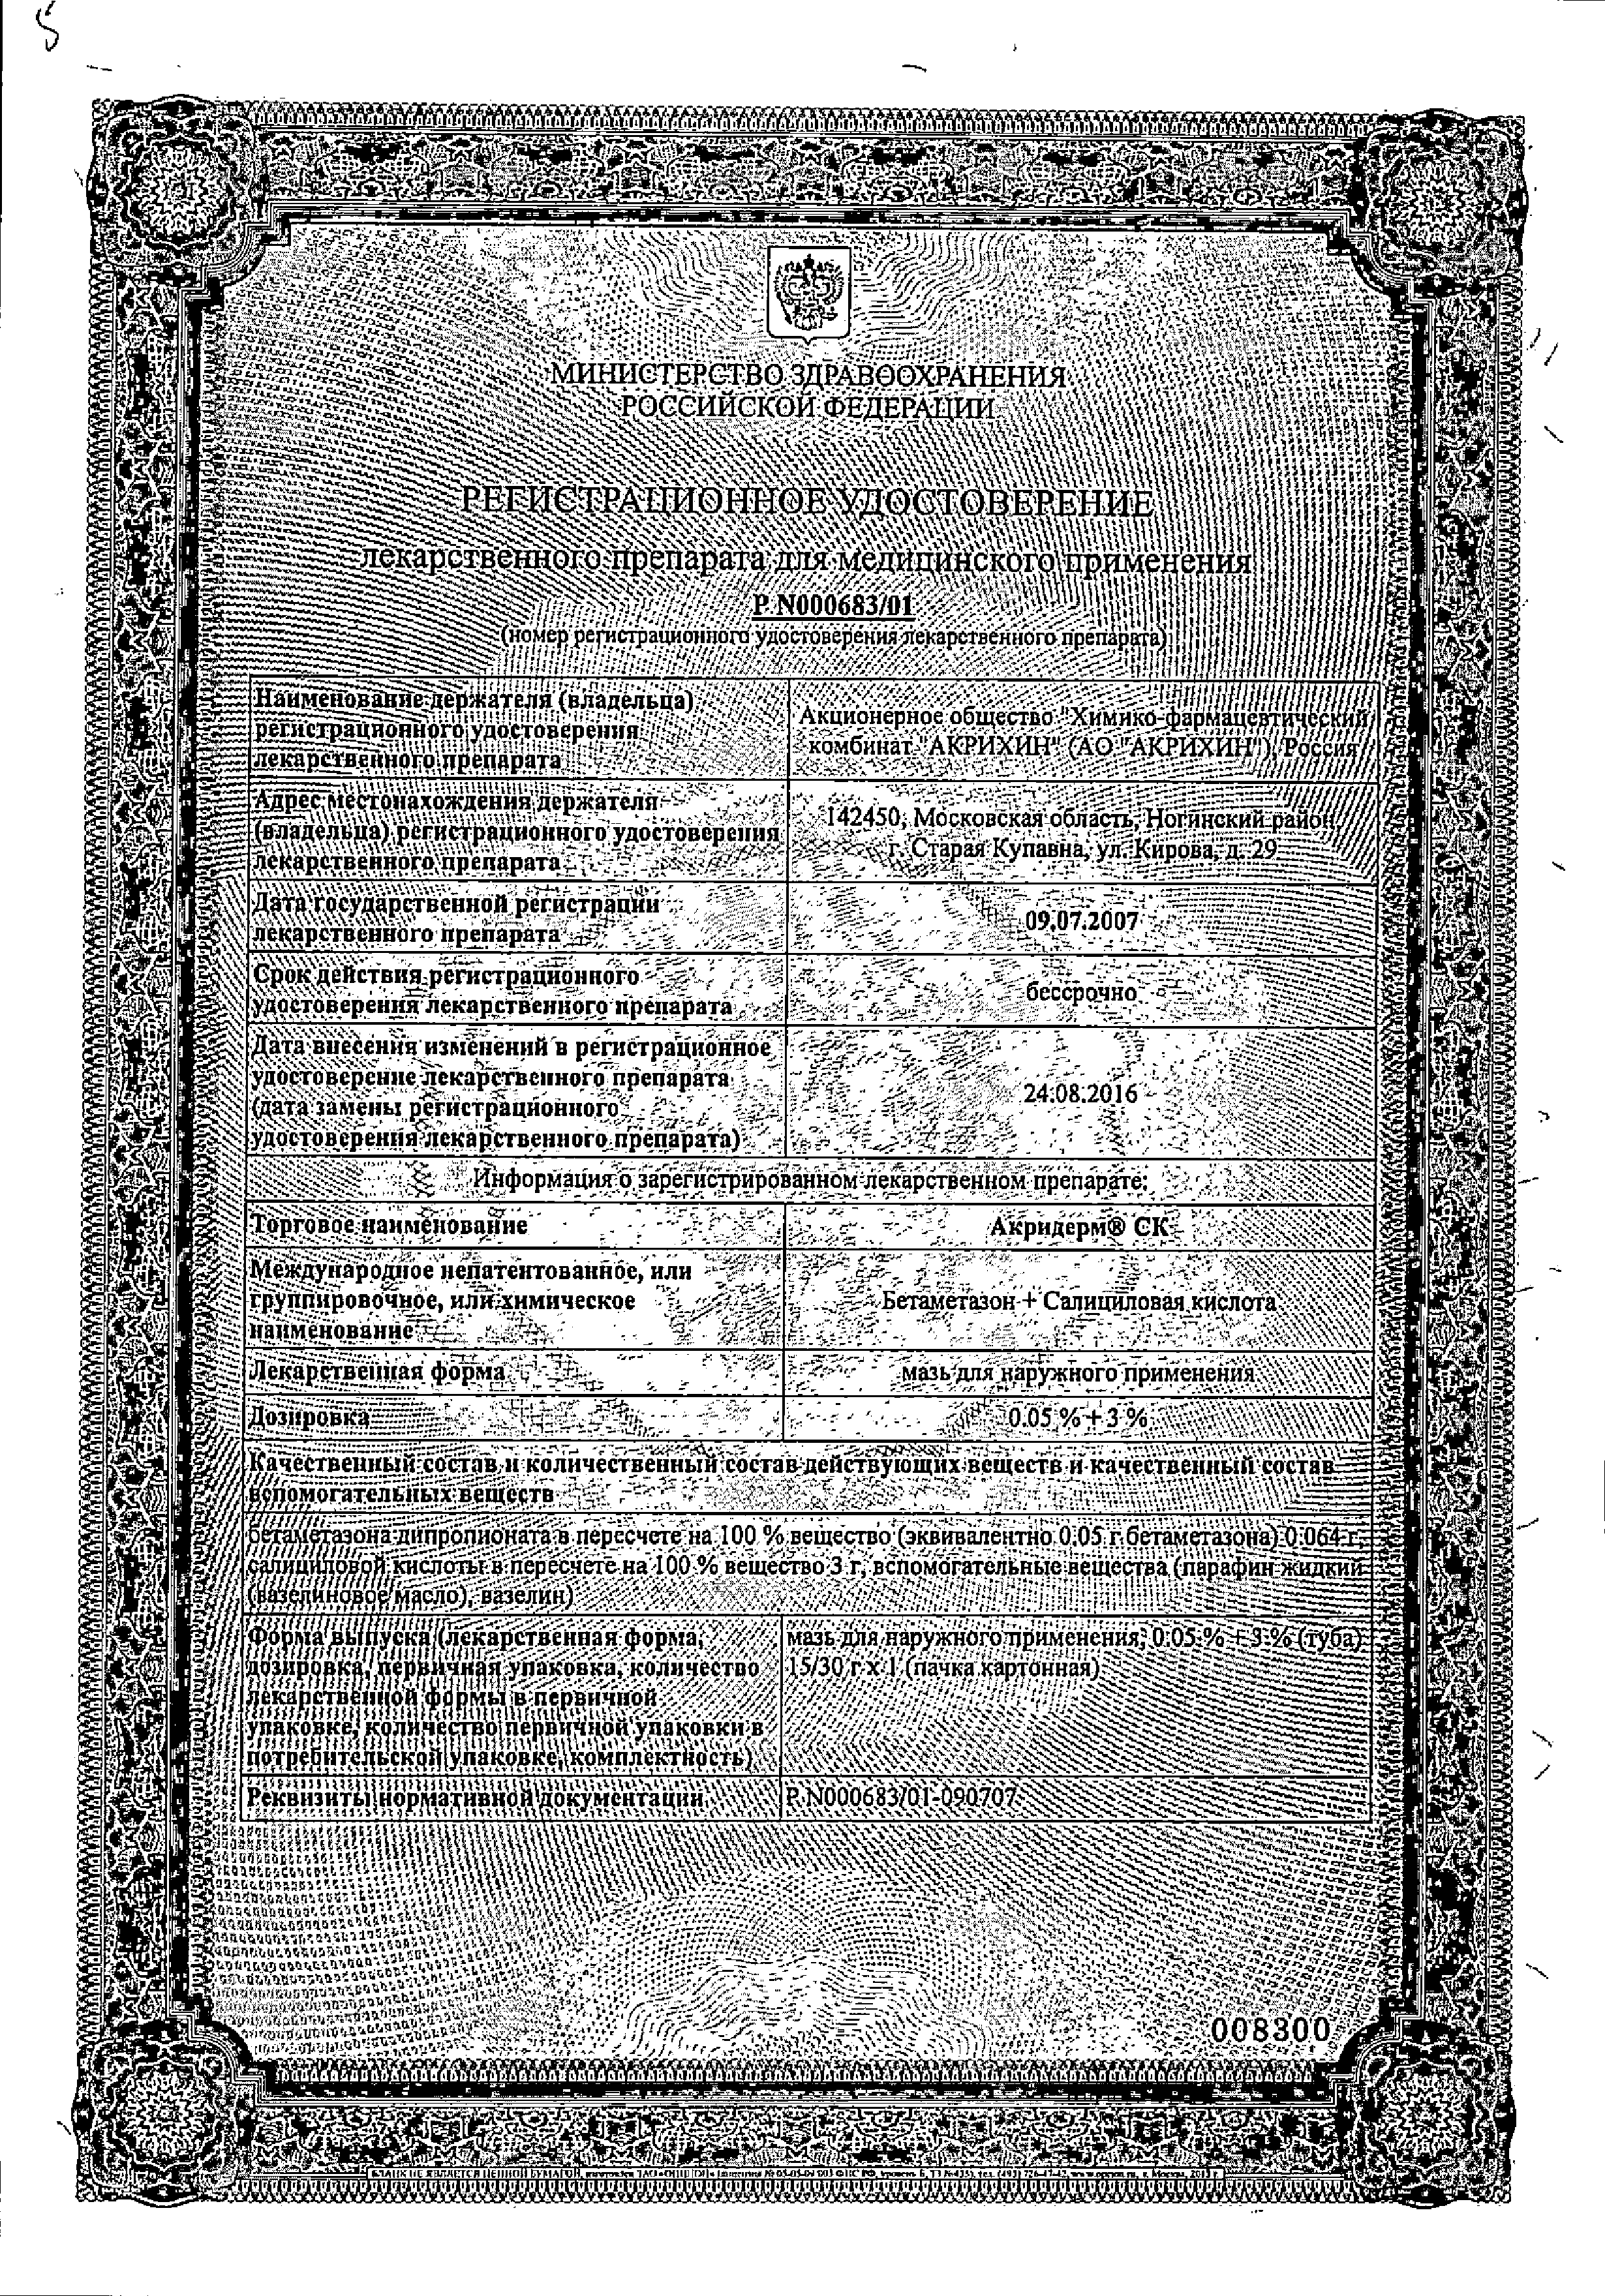 Акридерм СК сертификат